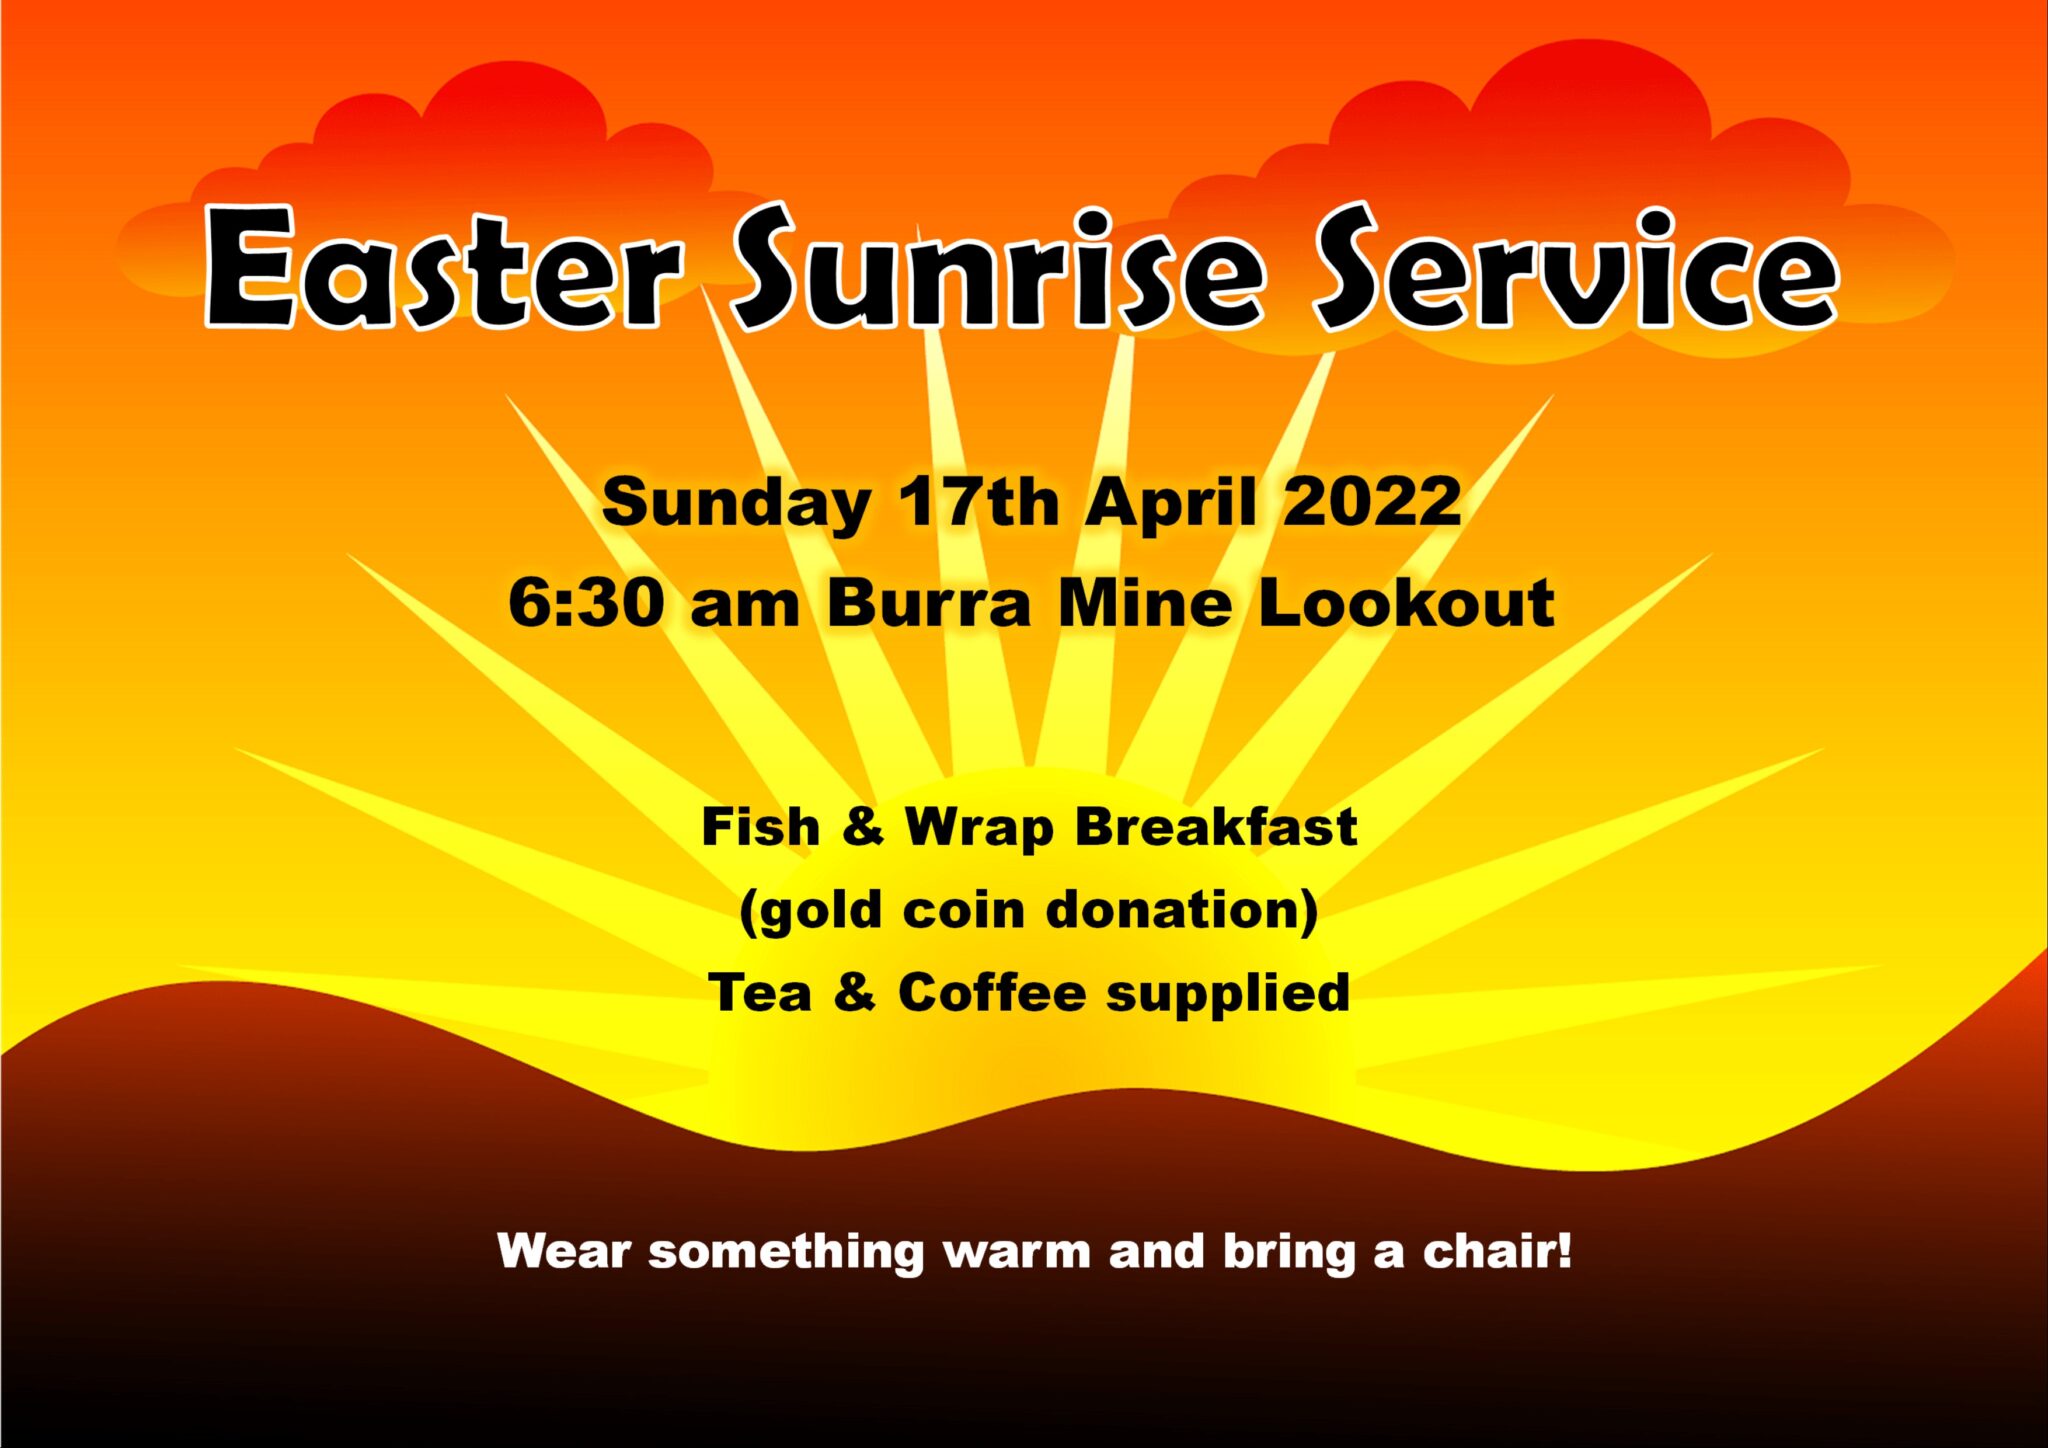 Easter Sunrise Service Visit Burra